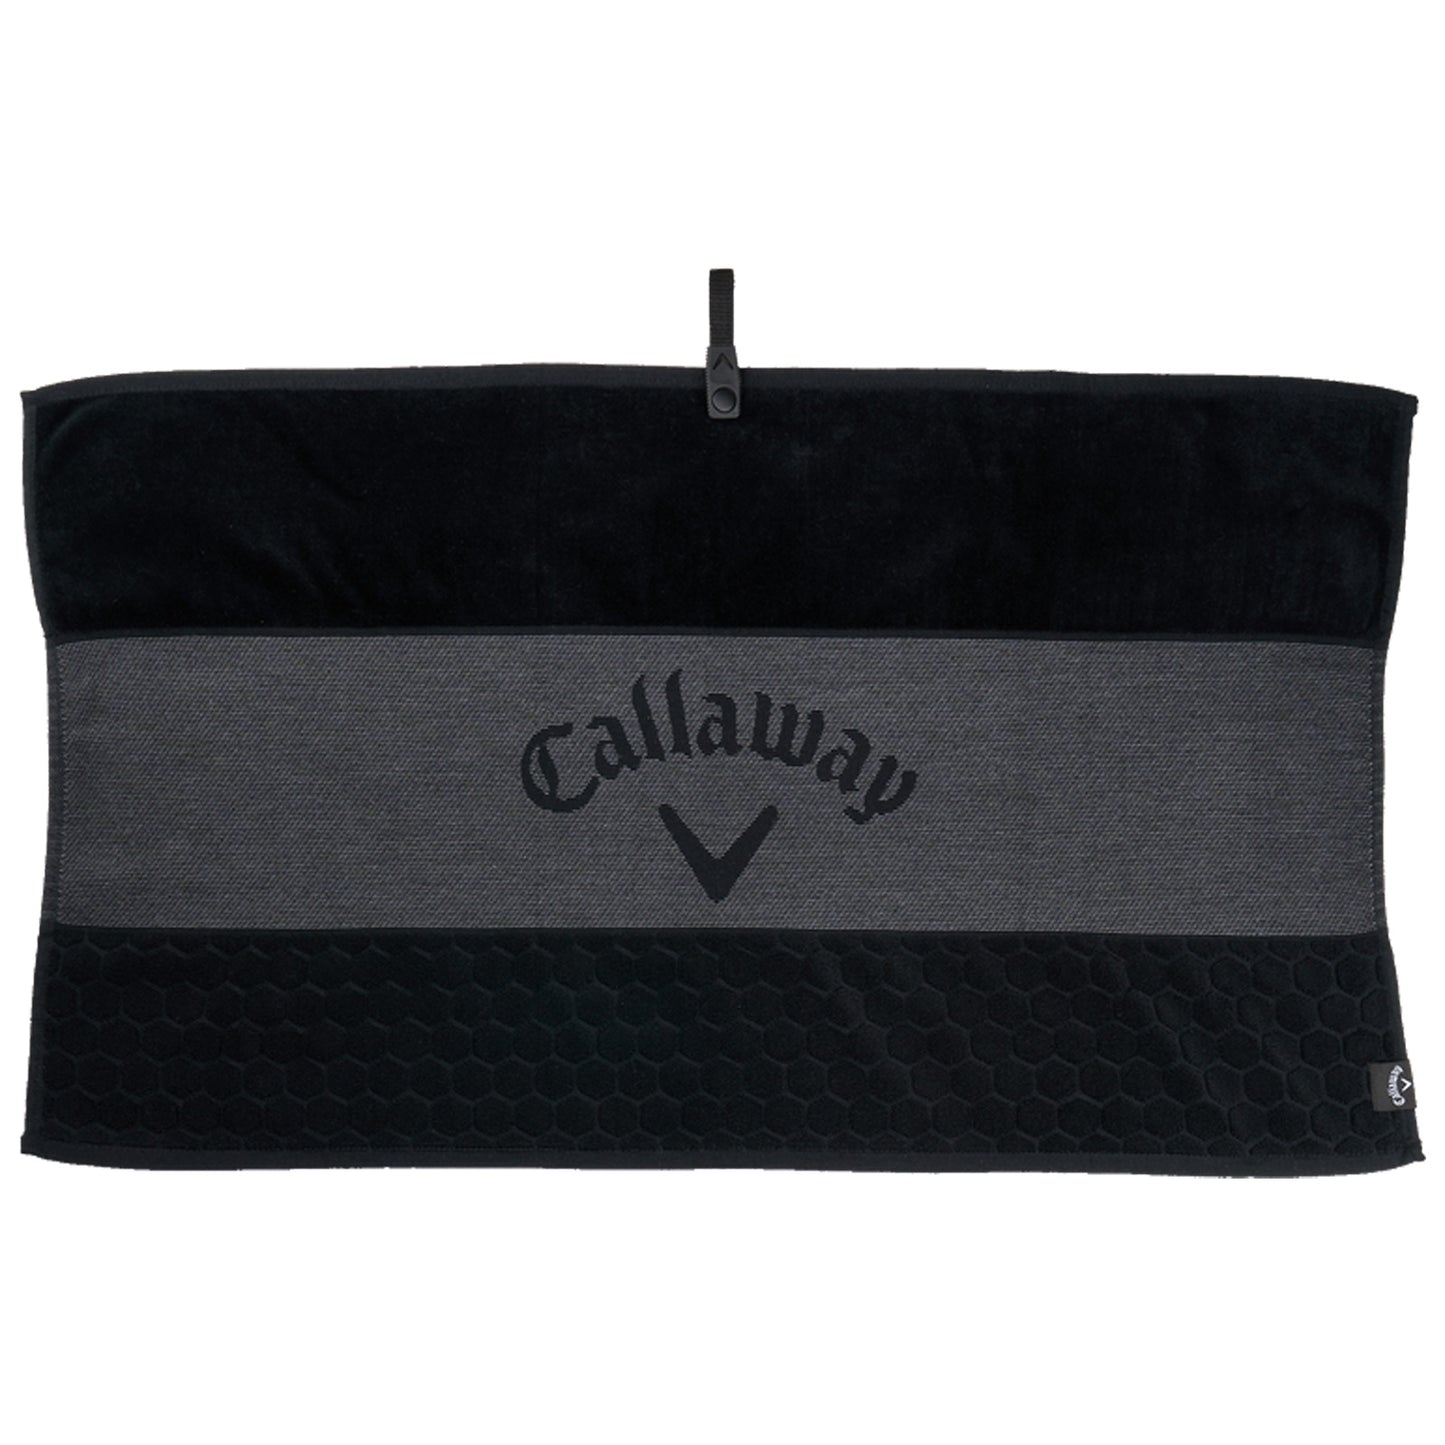 Callaway Tour Towel